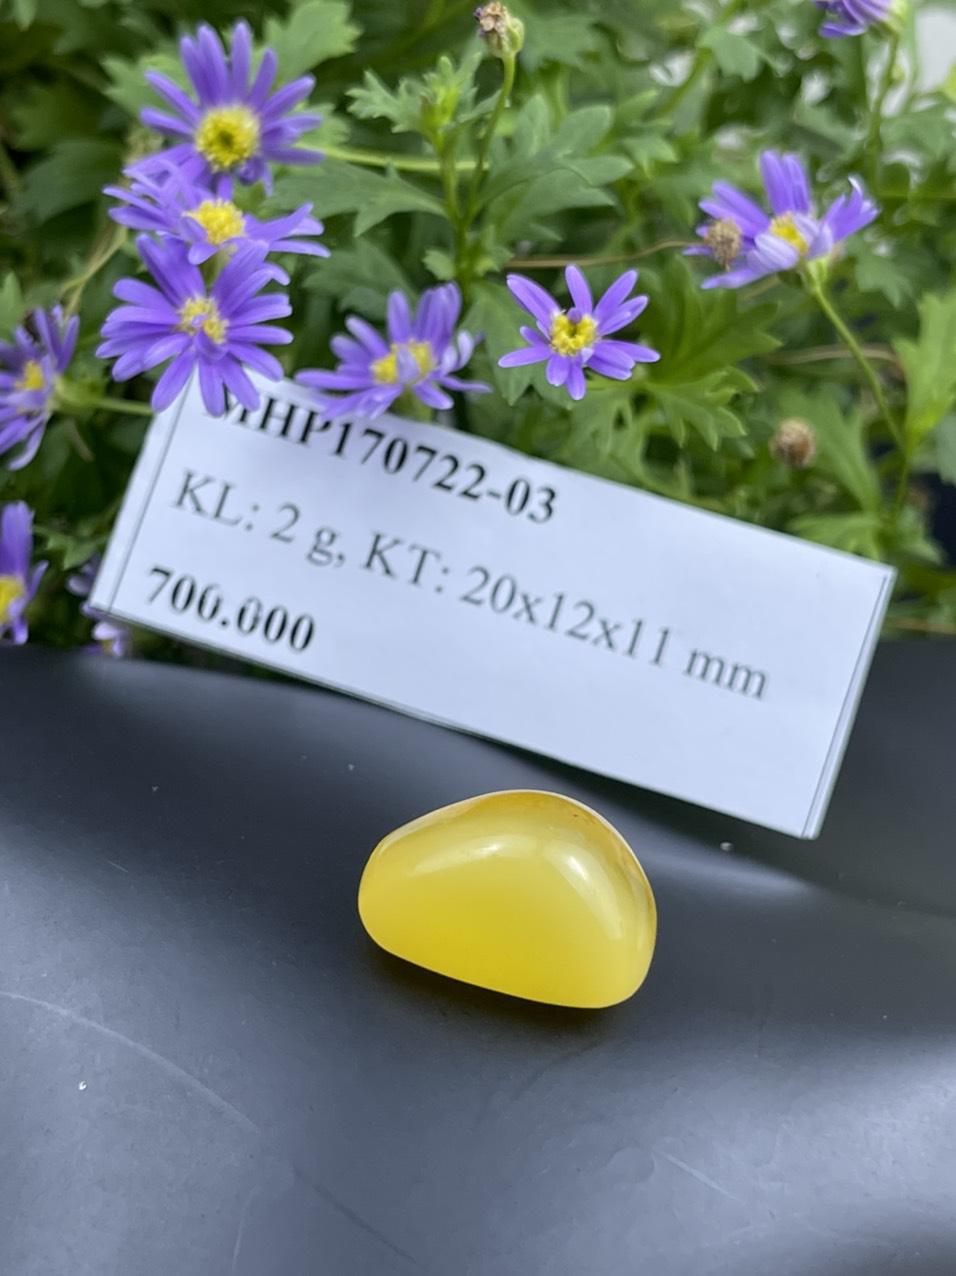 Mặt đá hổ phách vàng MHP170722-03